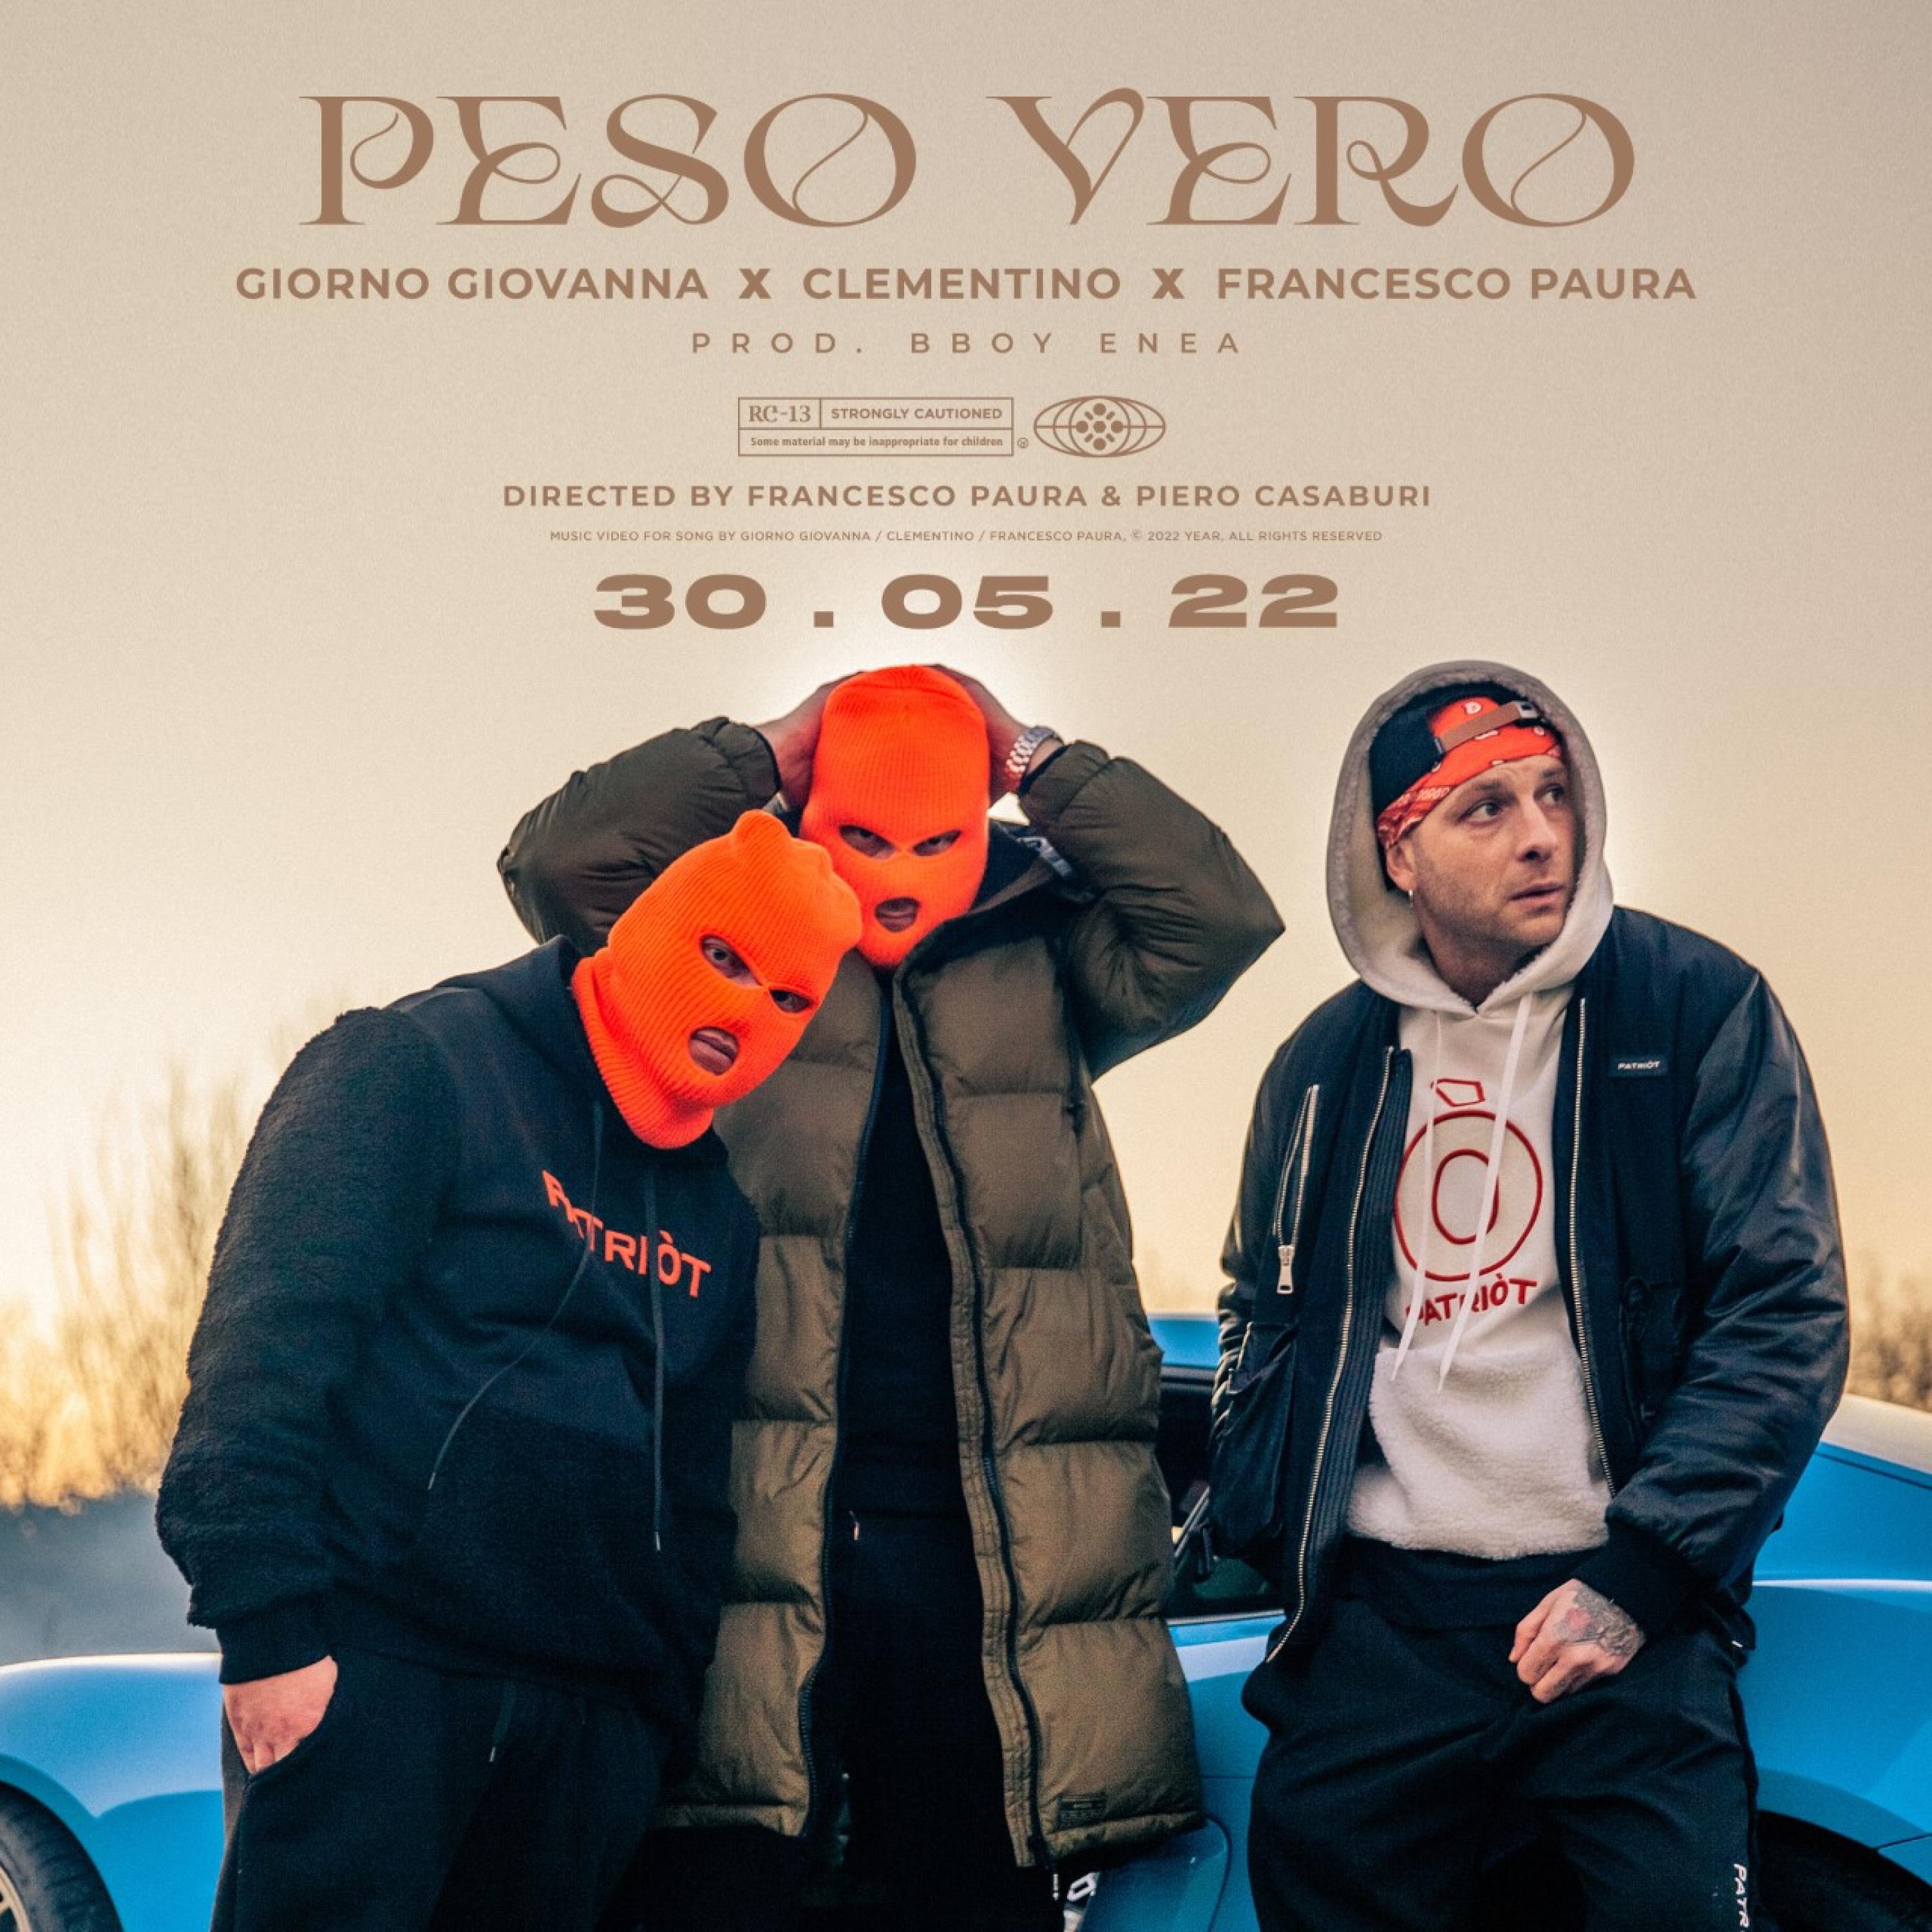 More Groove - PESO VERO (feat. Giorno Giovanna, Clementino, Francesco Paura & BBoy Enea)